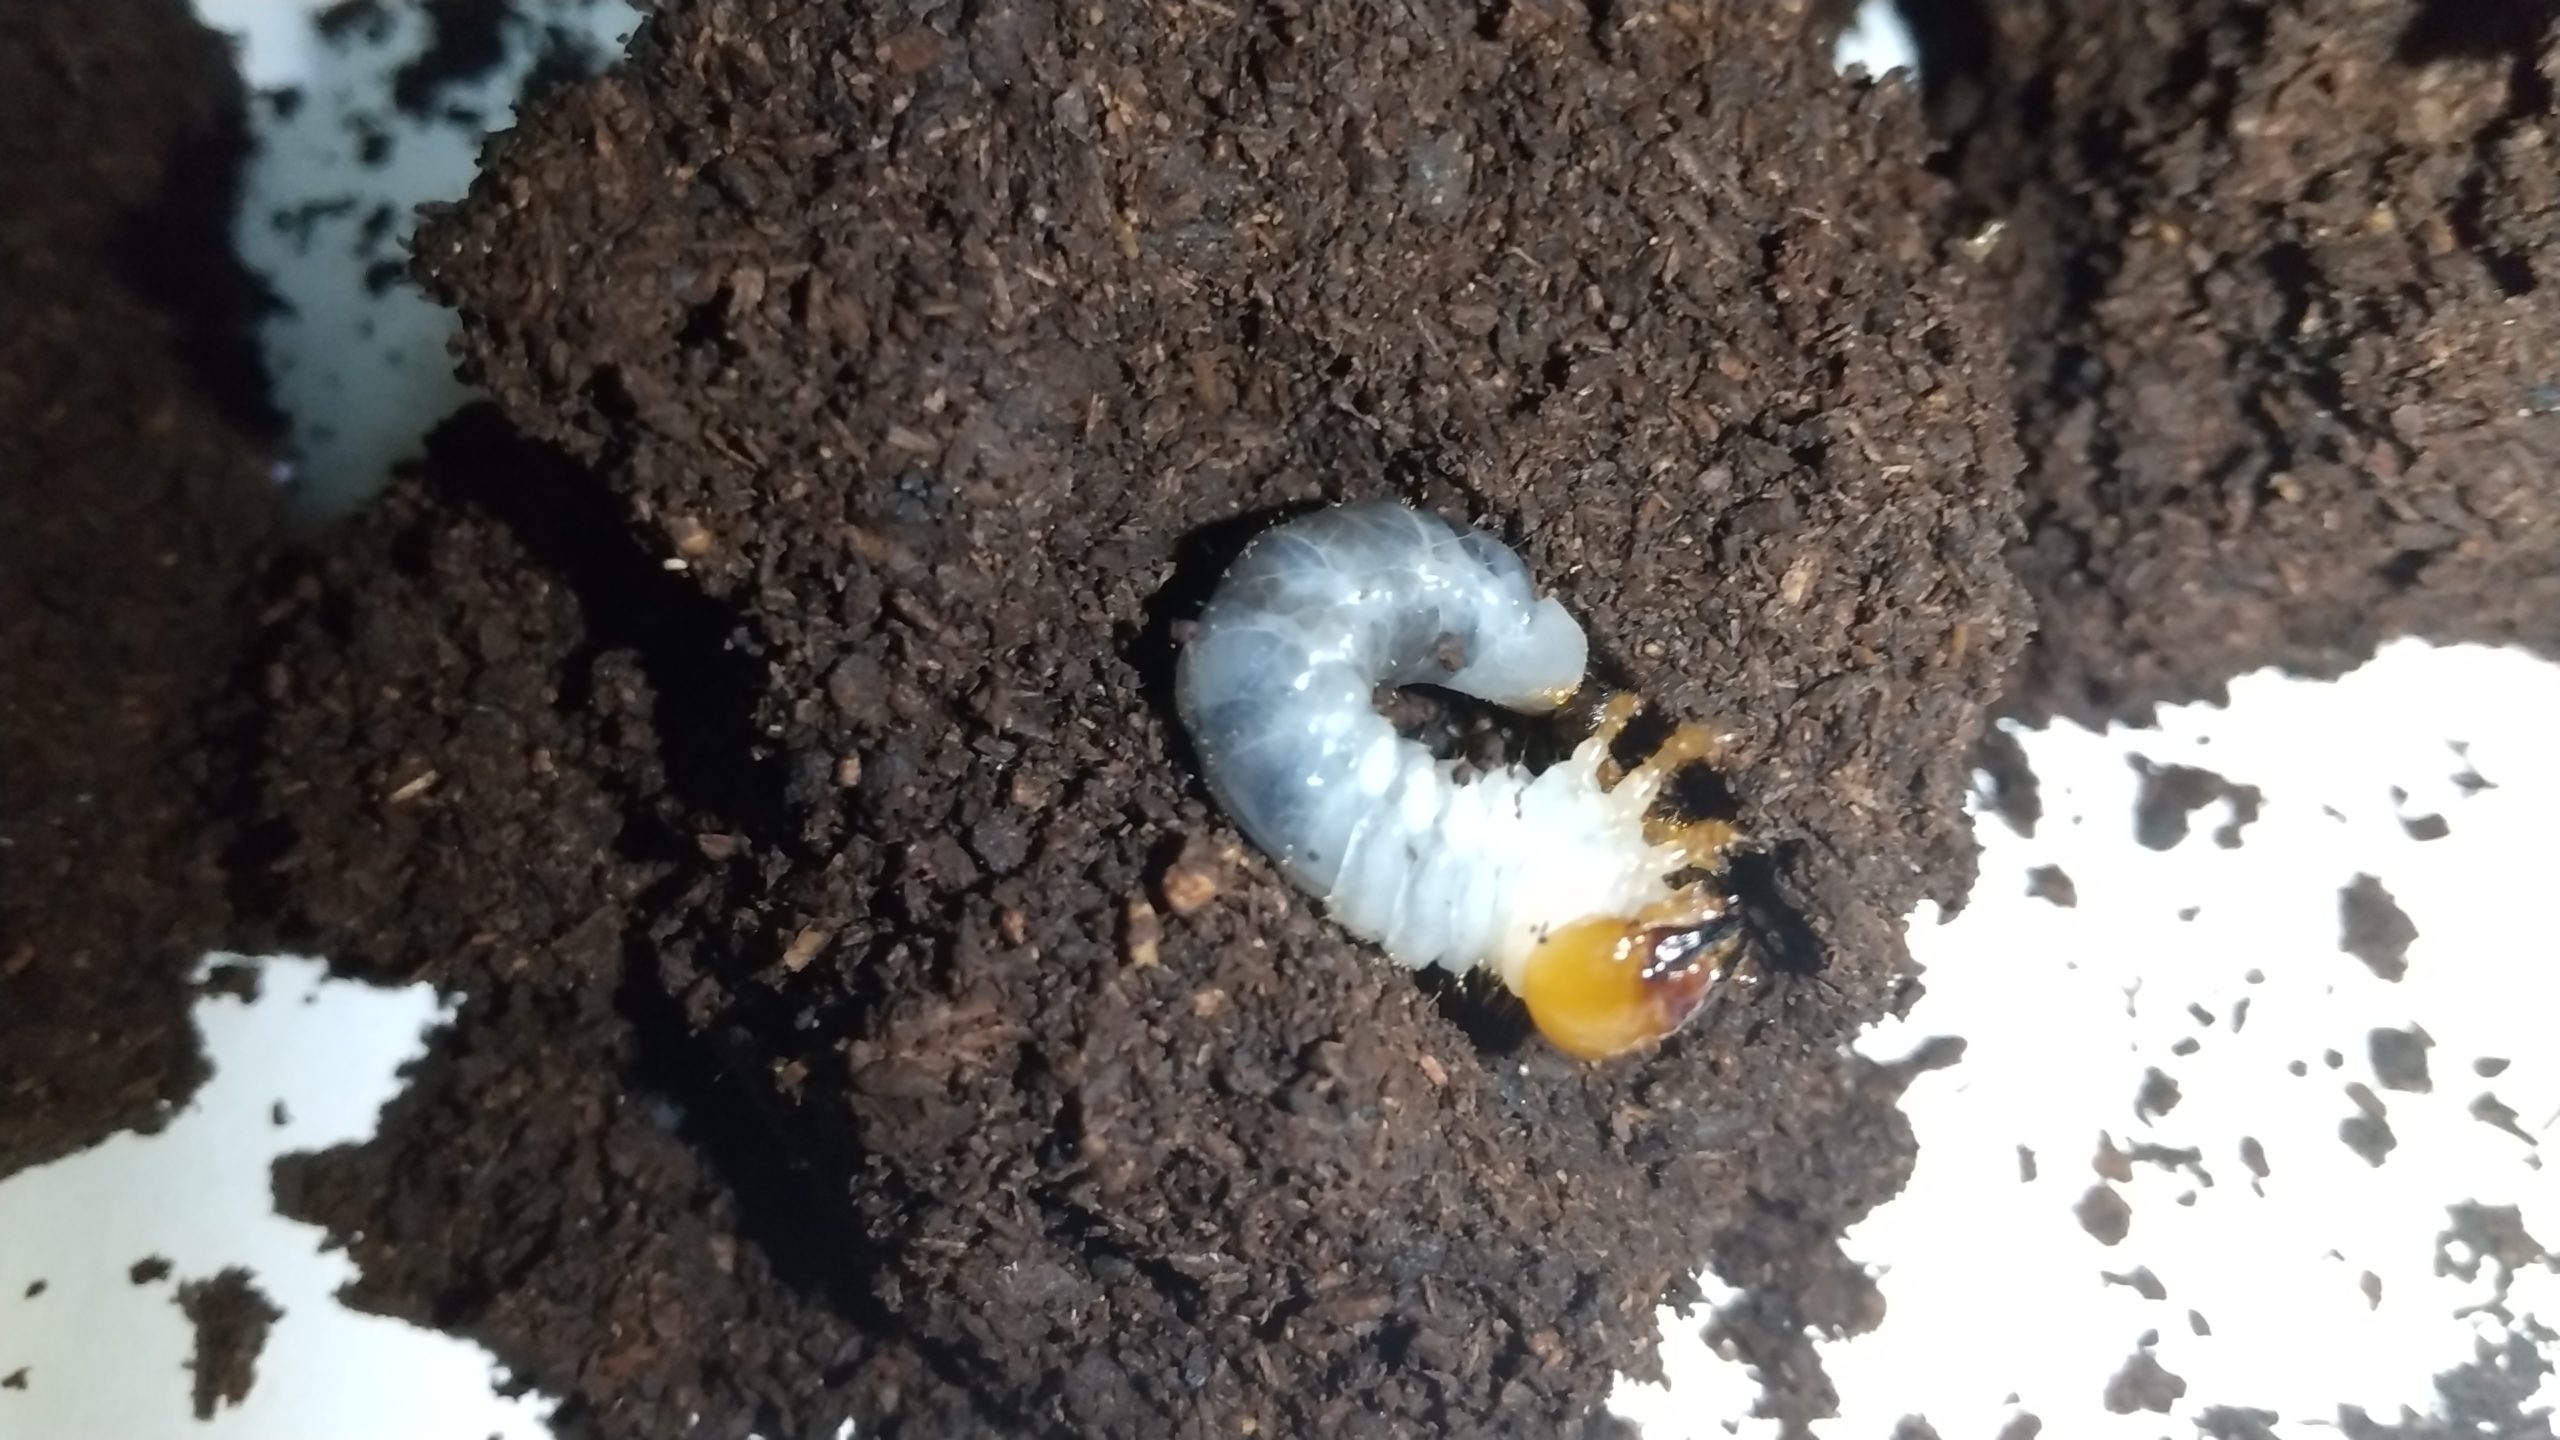 ミヤマクワガタの幼虫、孵化後3か月チェック